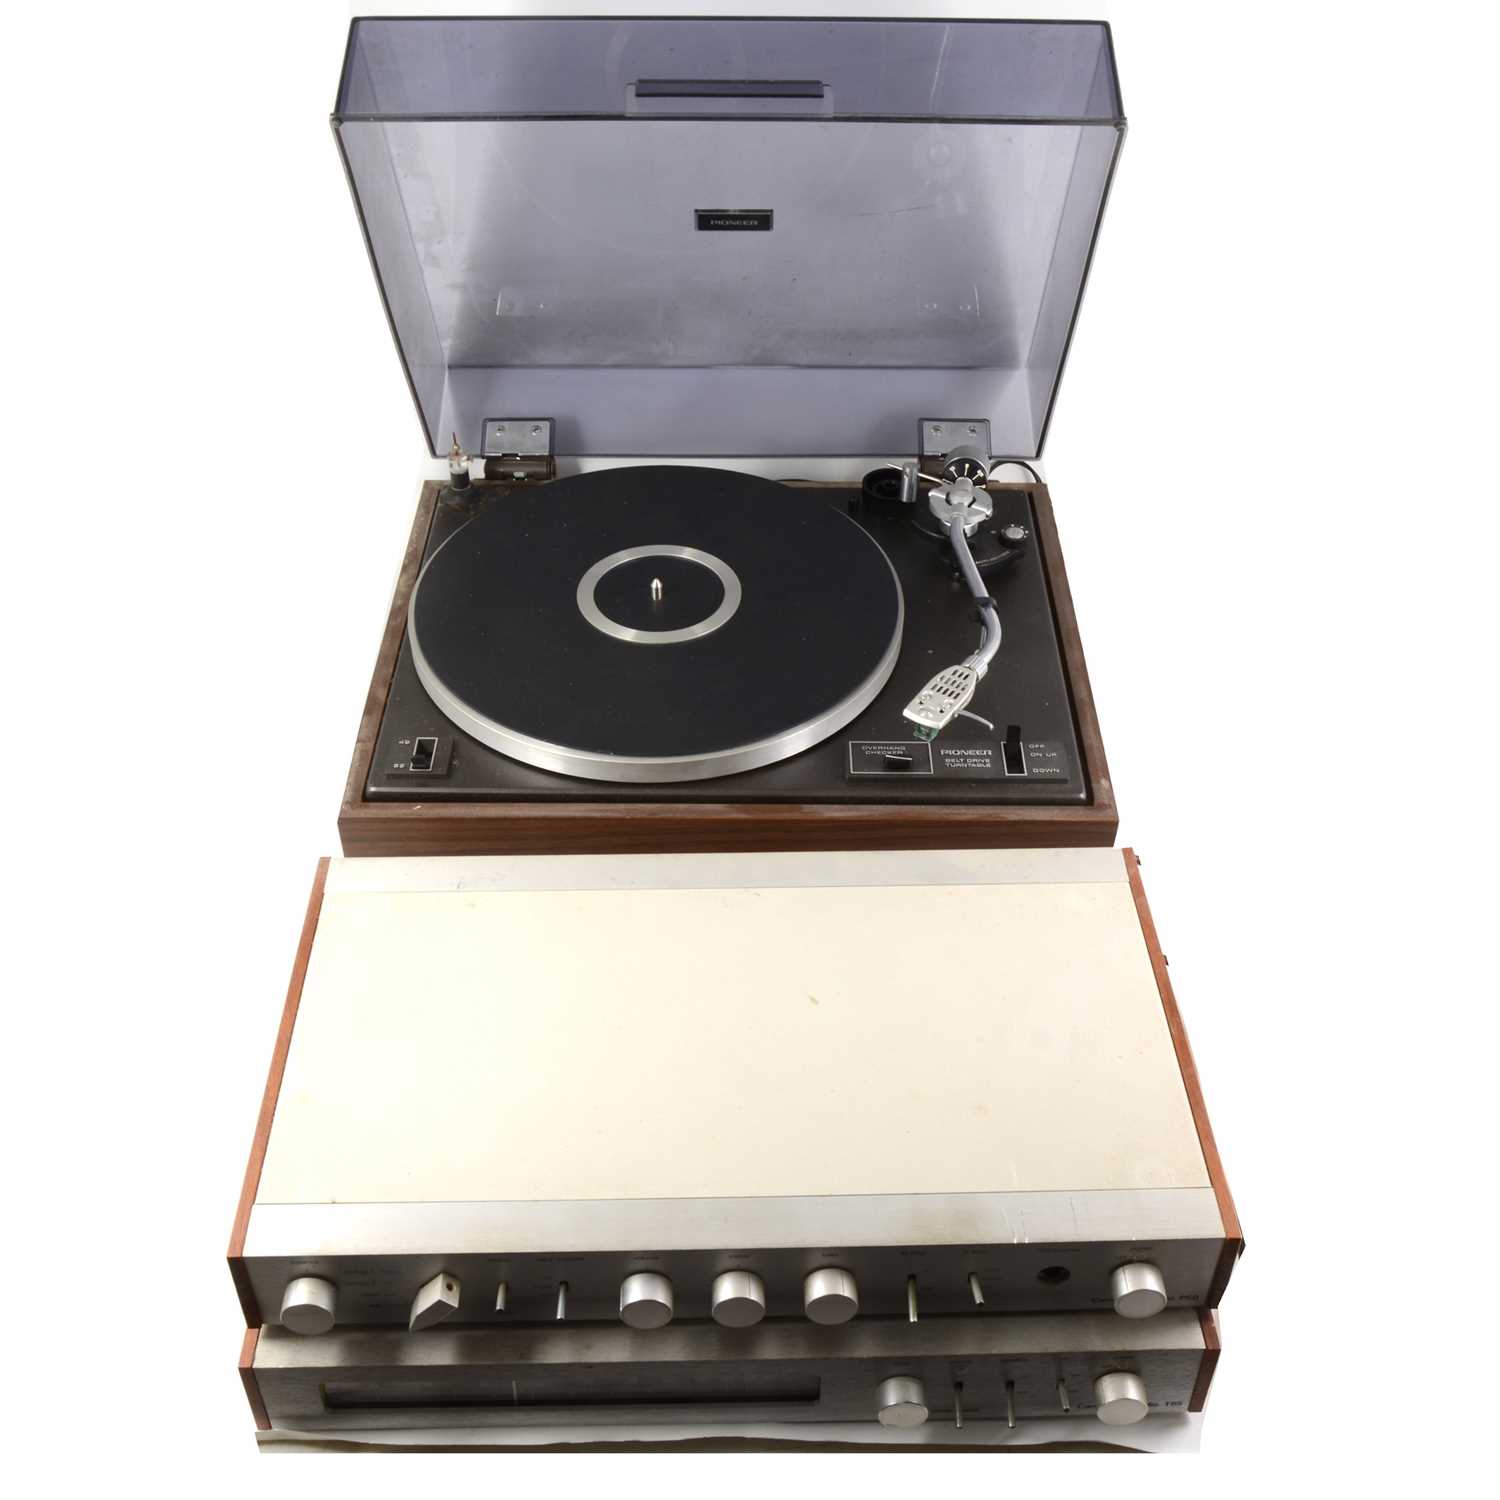 Lot 51 - Audio equipment; A PL-12D Pioneer turntable, P50 Cambridge Audio stereo amplifier, T45 Cambridge audio FM radio tuner.